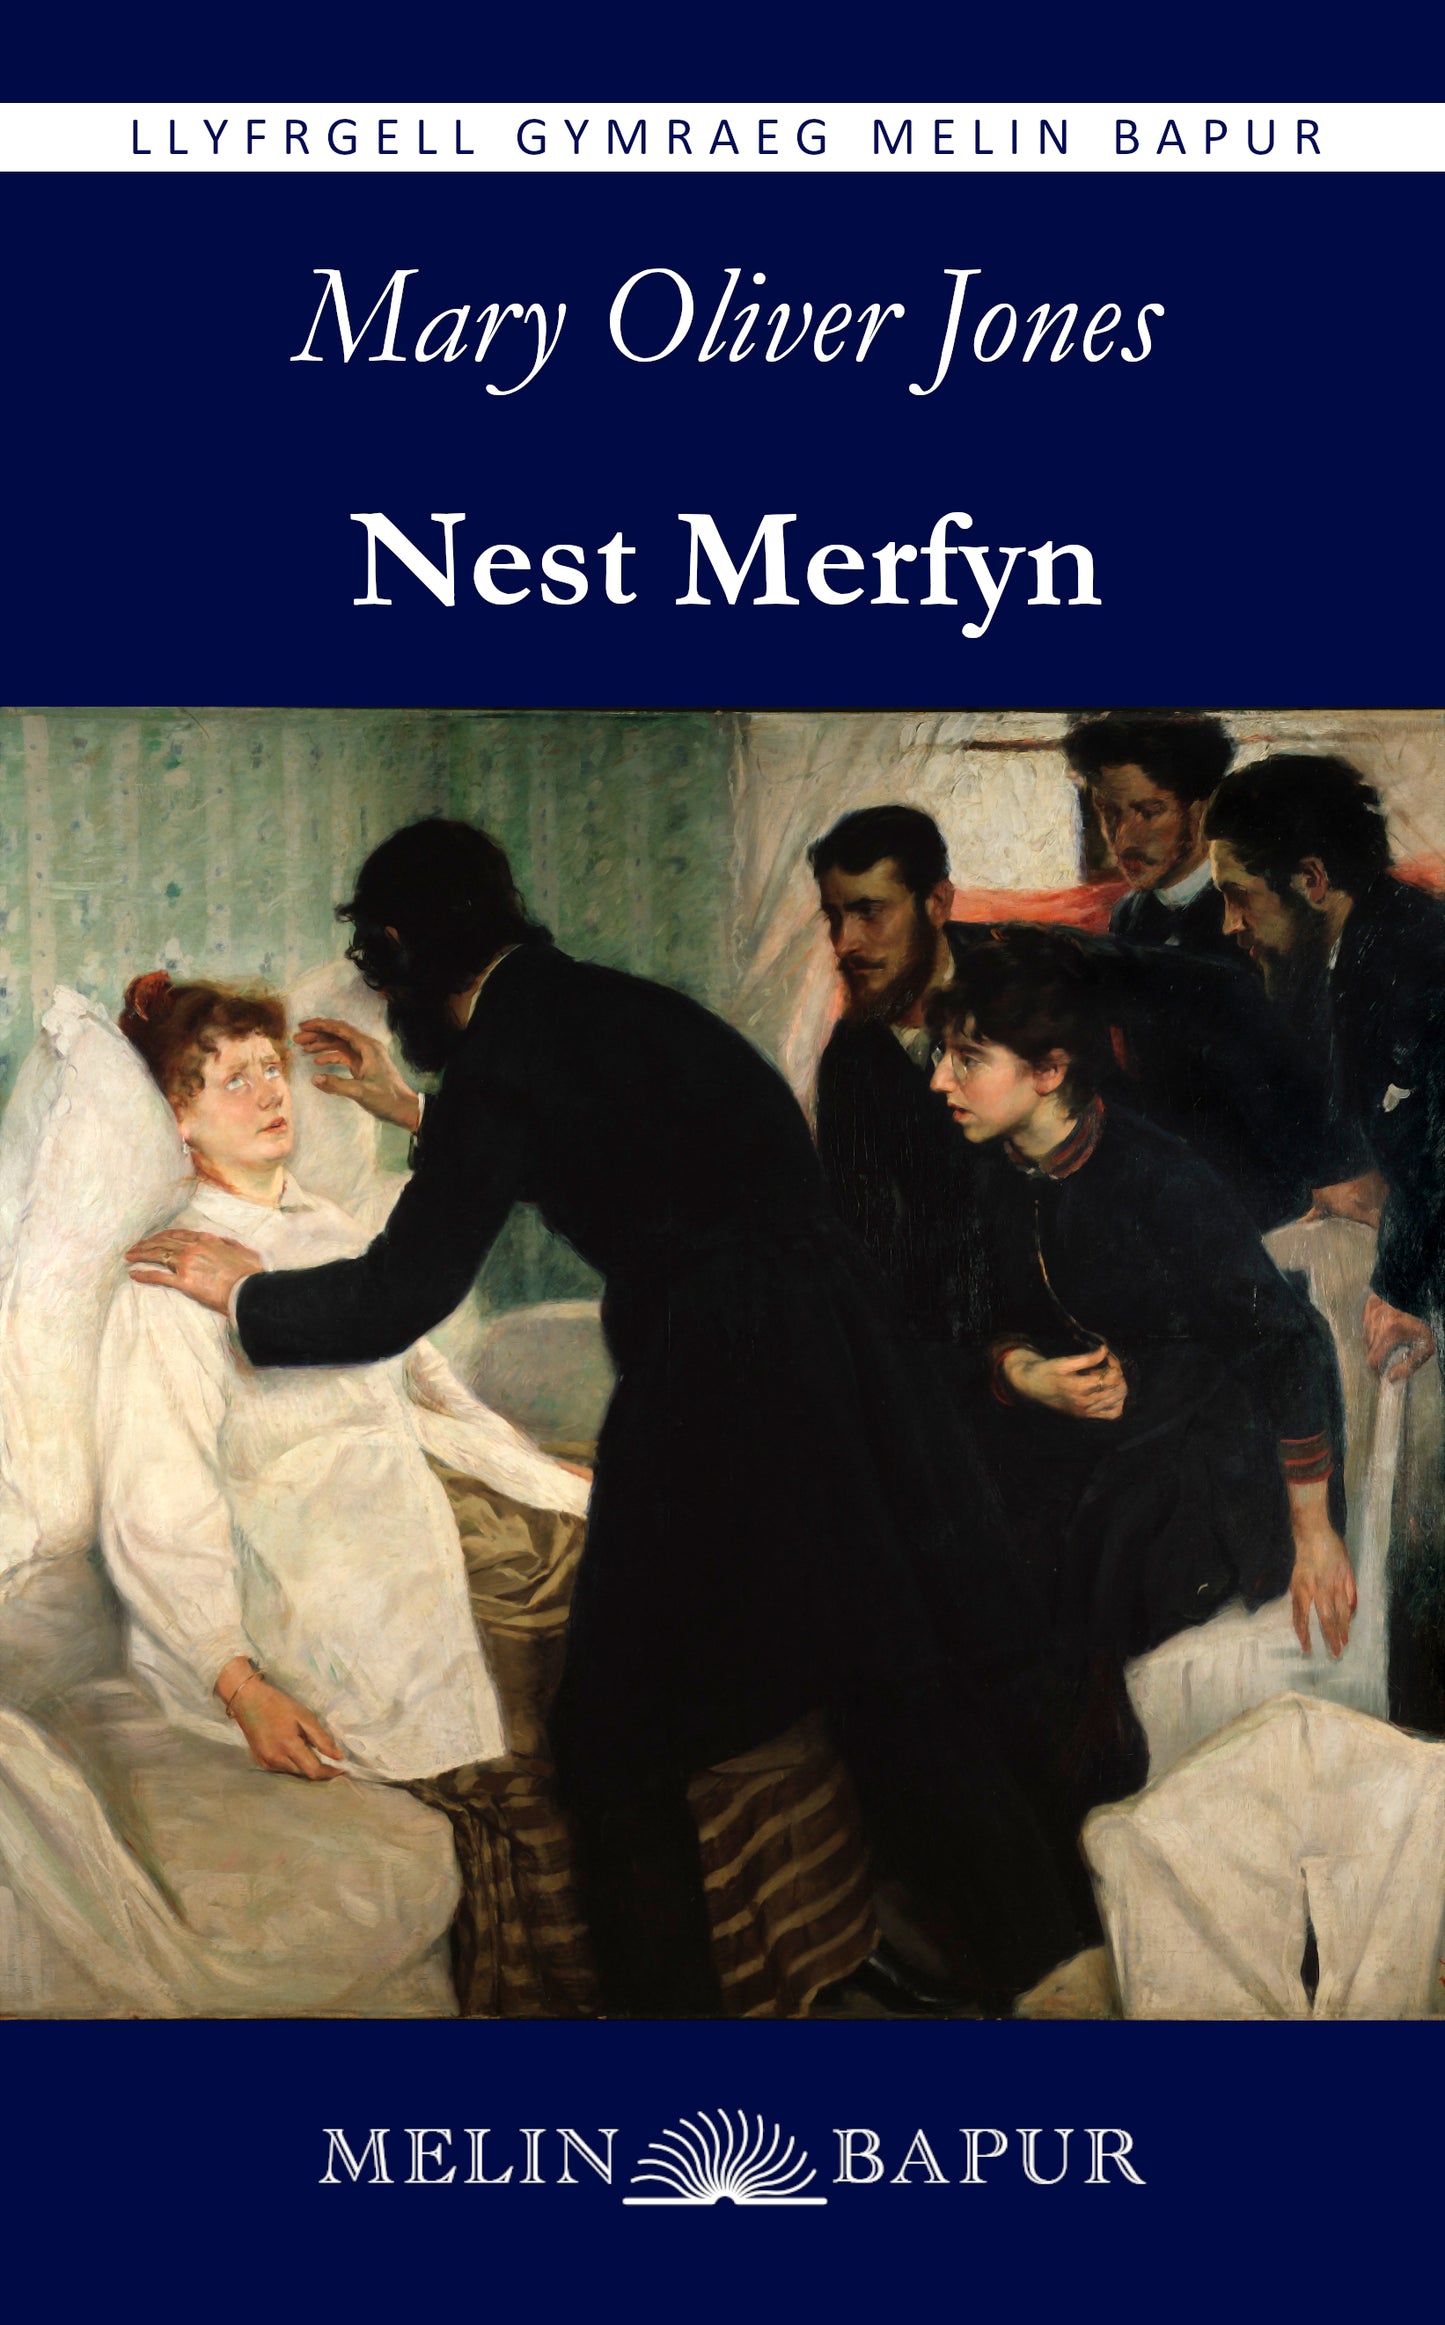 Nest Merfyn (Mary Oliver Jones)